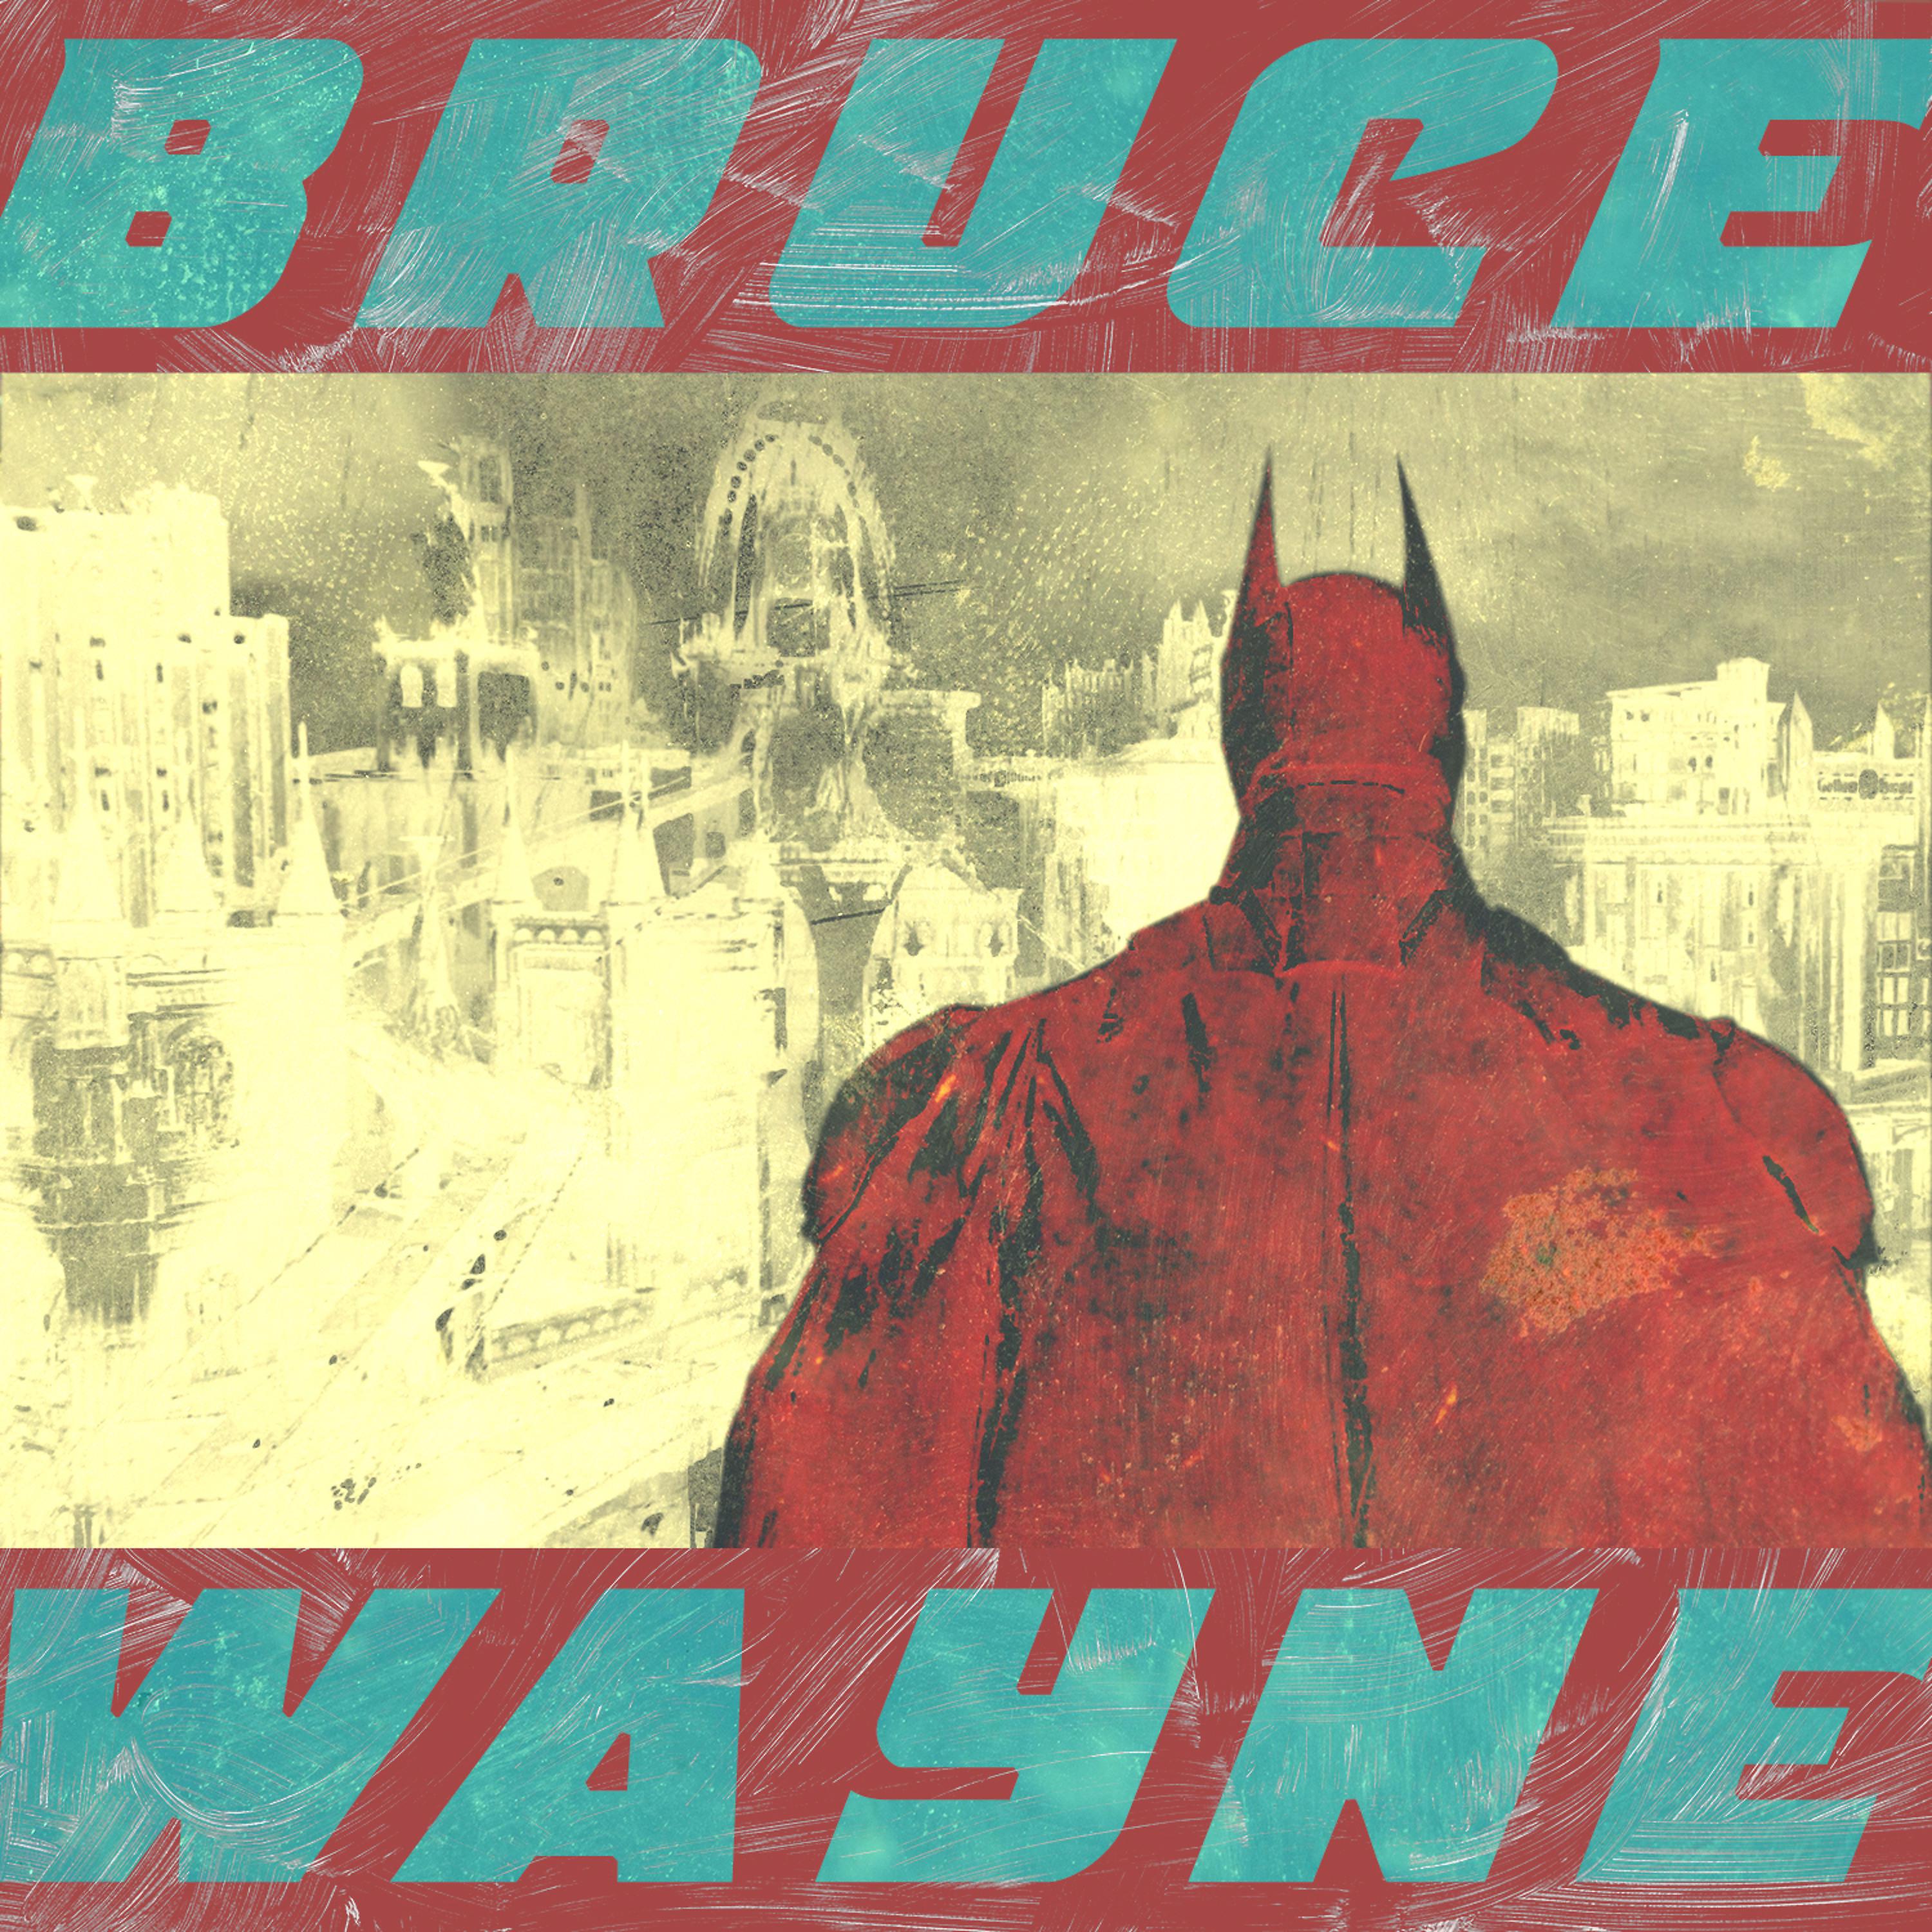 Постер альбома Bruce Wayne